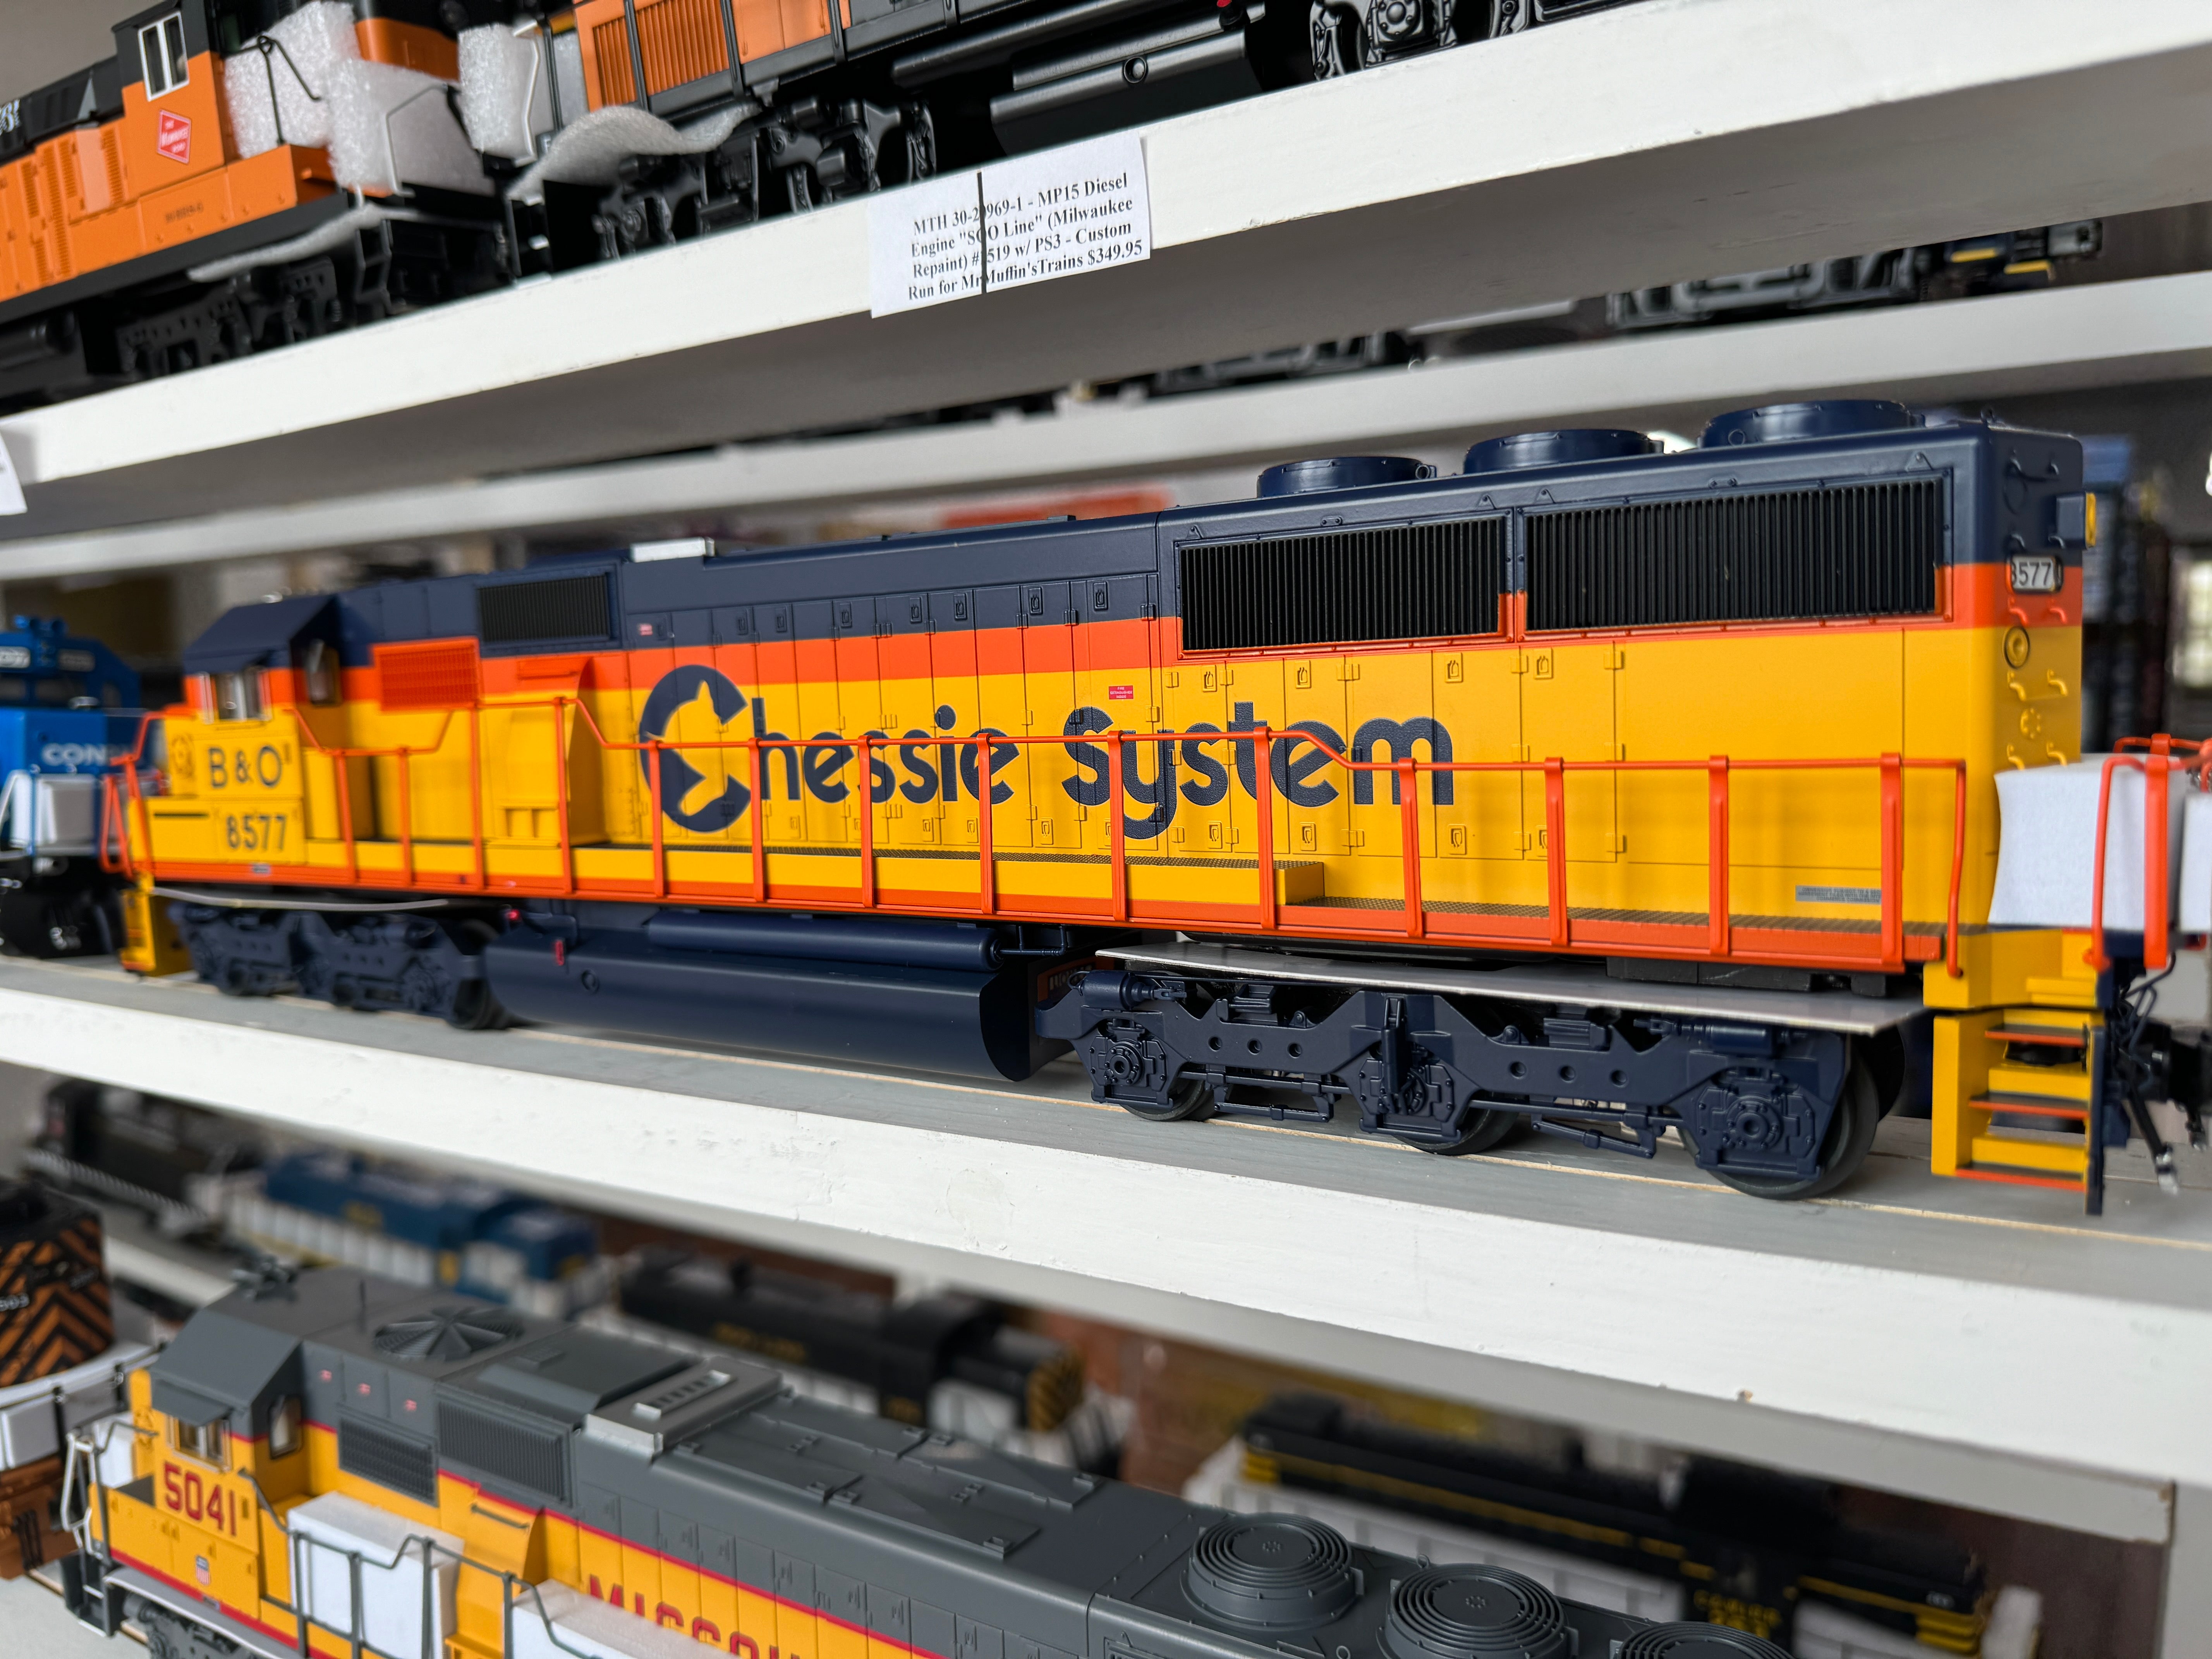 Lionel 2433232 - Legacy SD50 Diesel Engine "Baltimore & Ohio" #8584 (Chessie System)